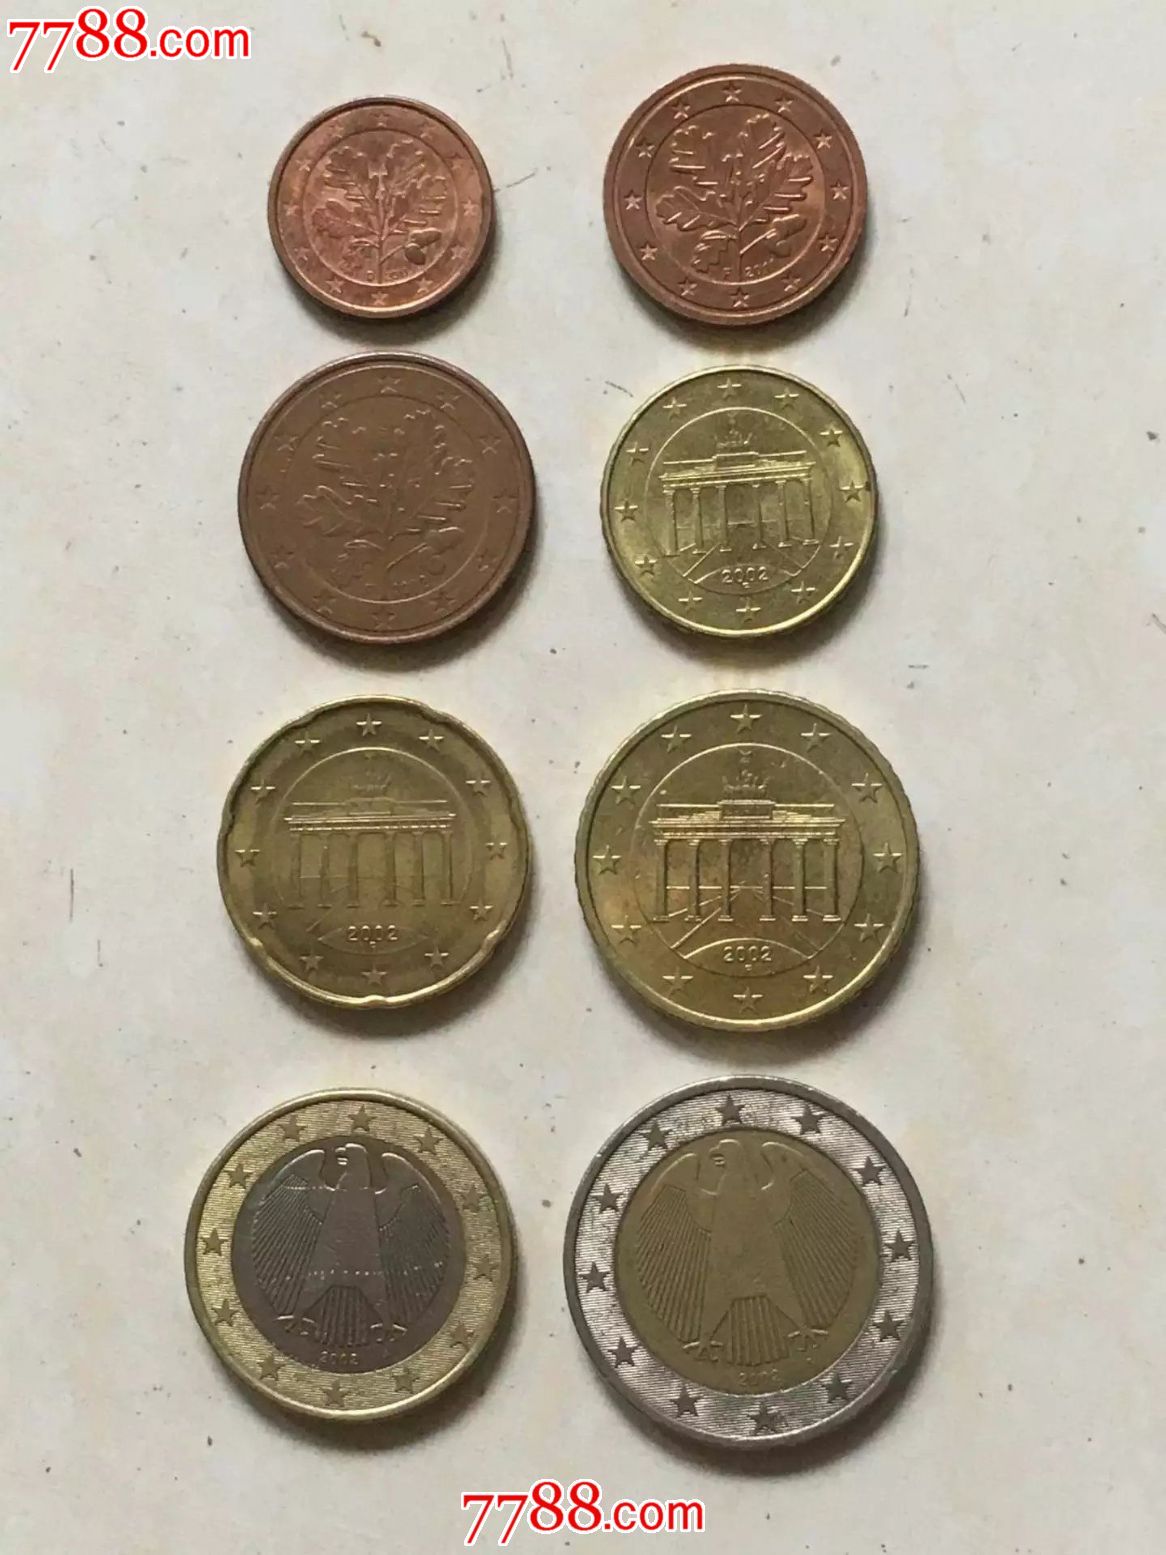 欧元硬币的特写 库存图片. 图片 包括有 现金, 硬币, 关闭, 百分比, 金属, 欧洲, 钱币学, 附注 - 205570759